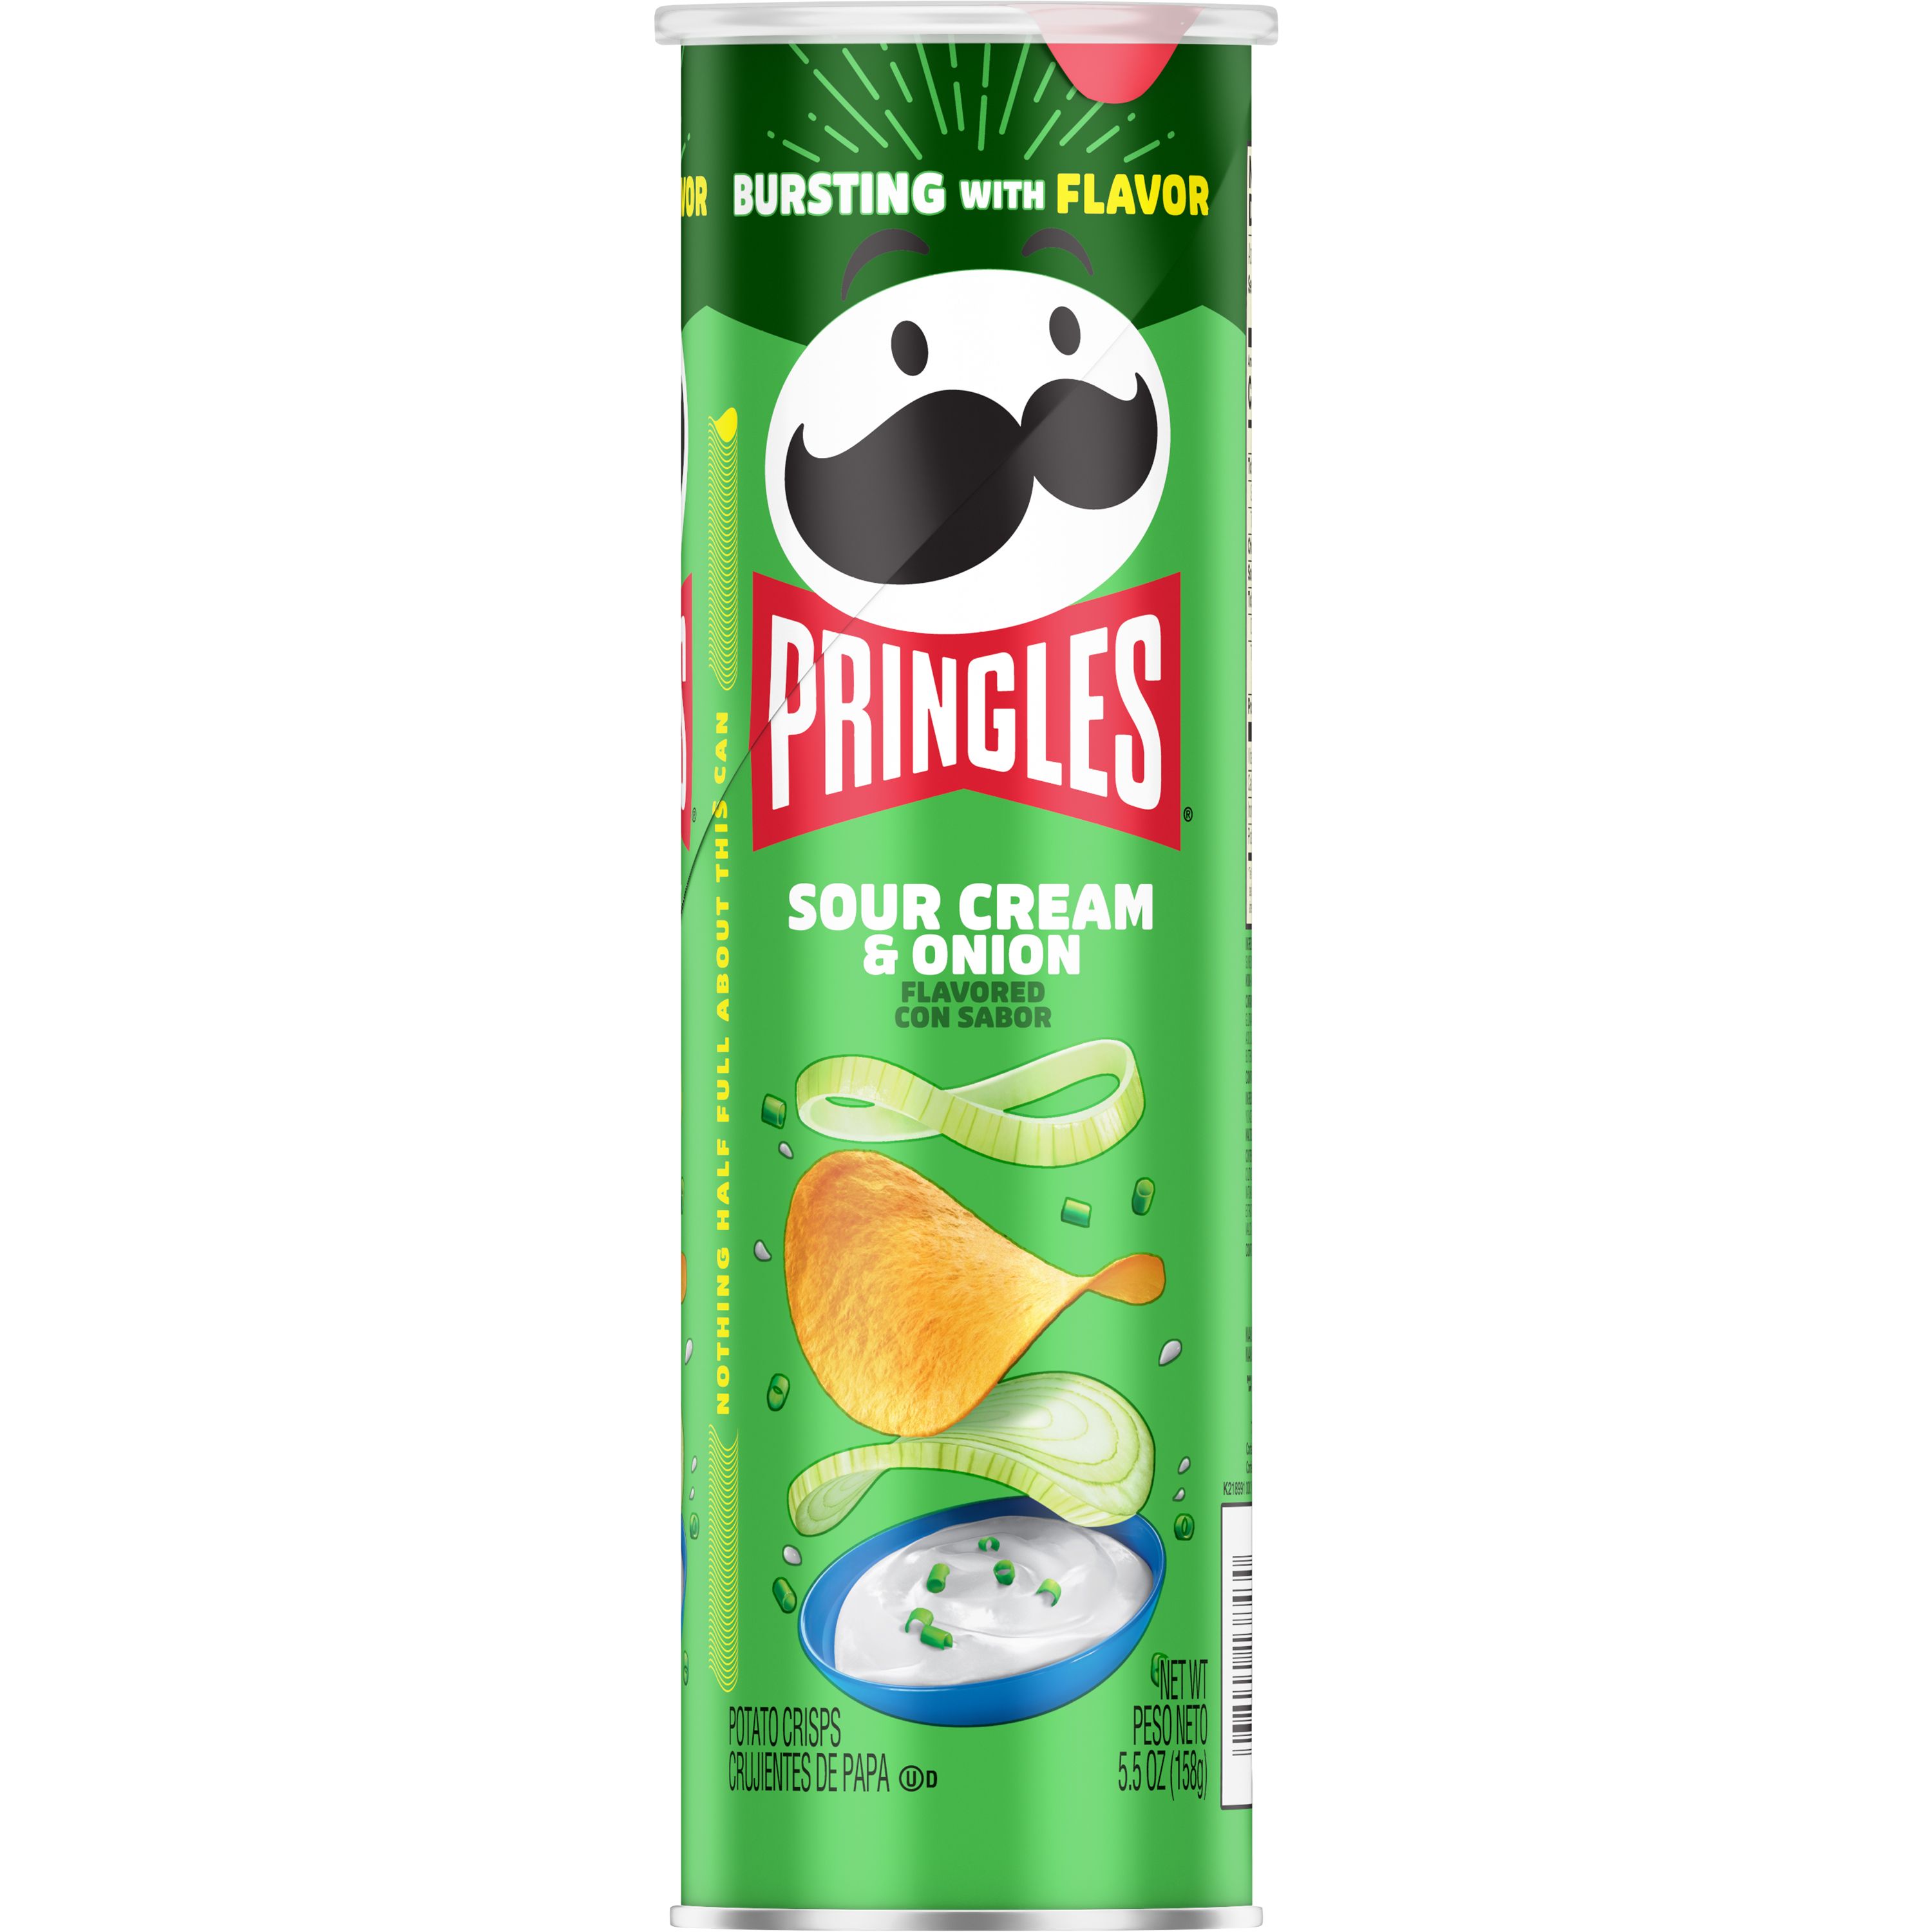 PringlesÂ® Sour Cream & Onion Crisps - SmartLabelâ¢